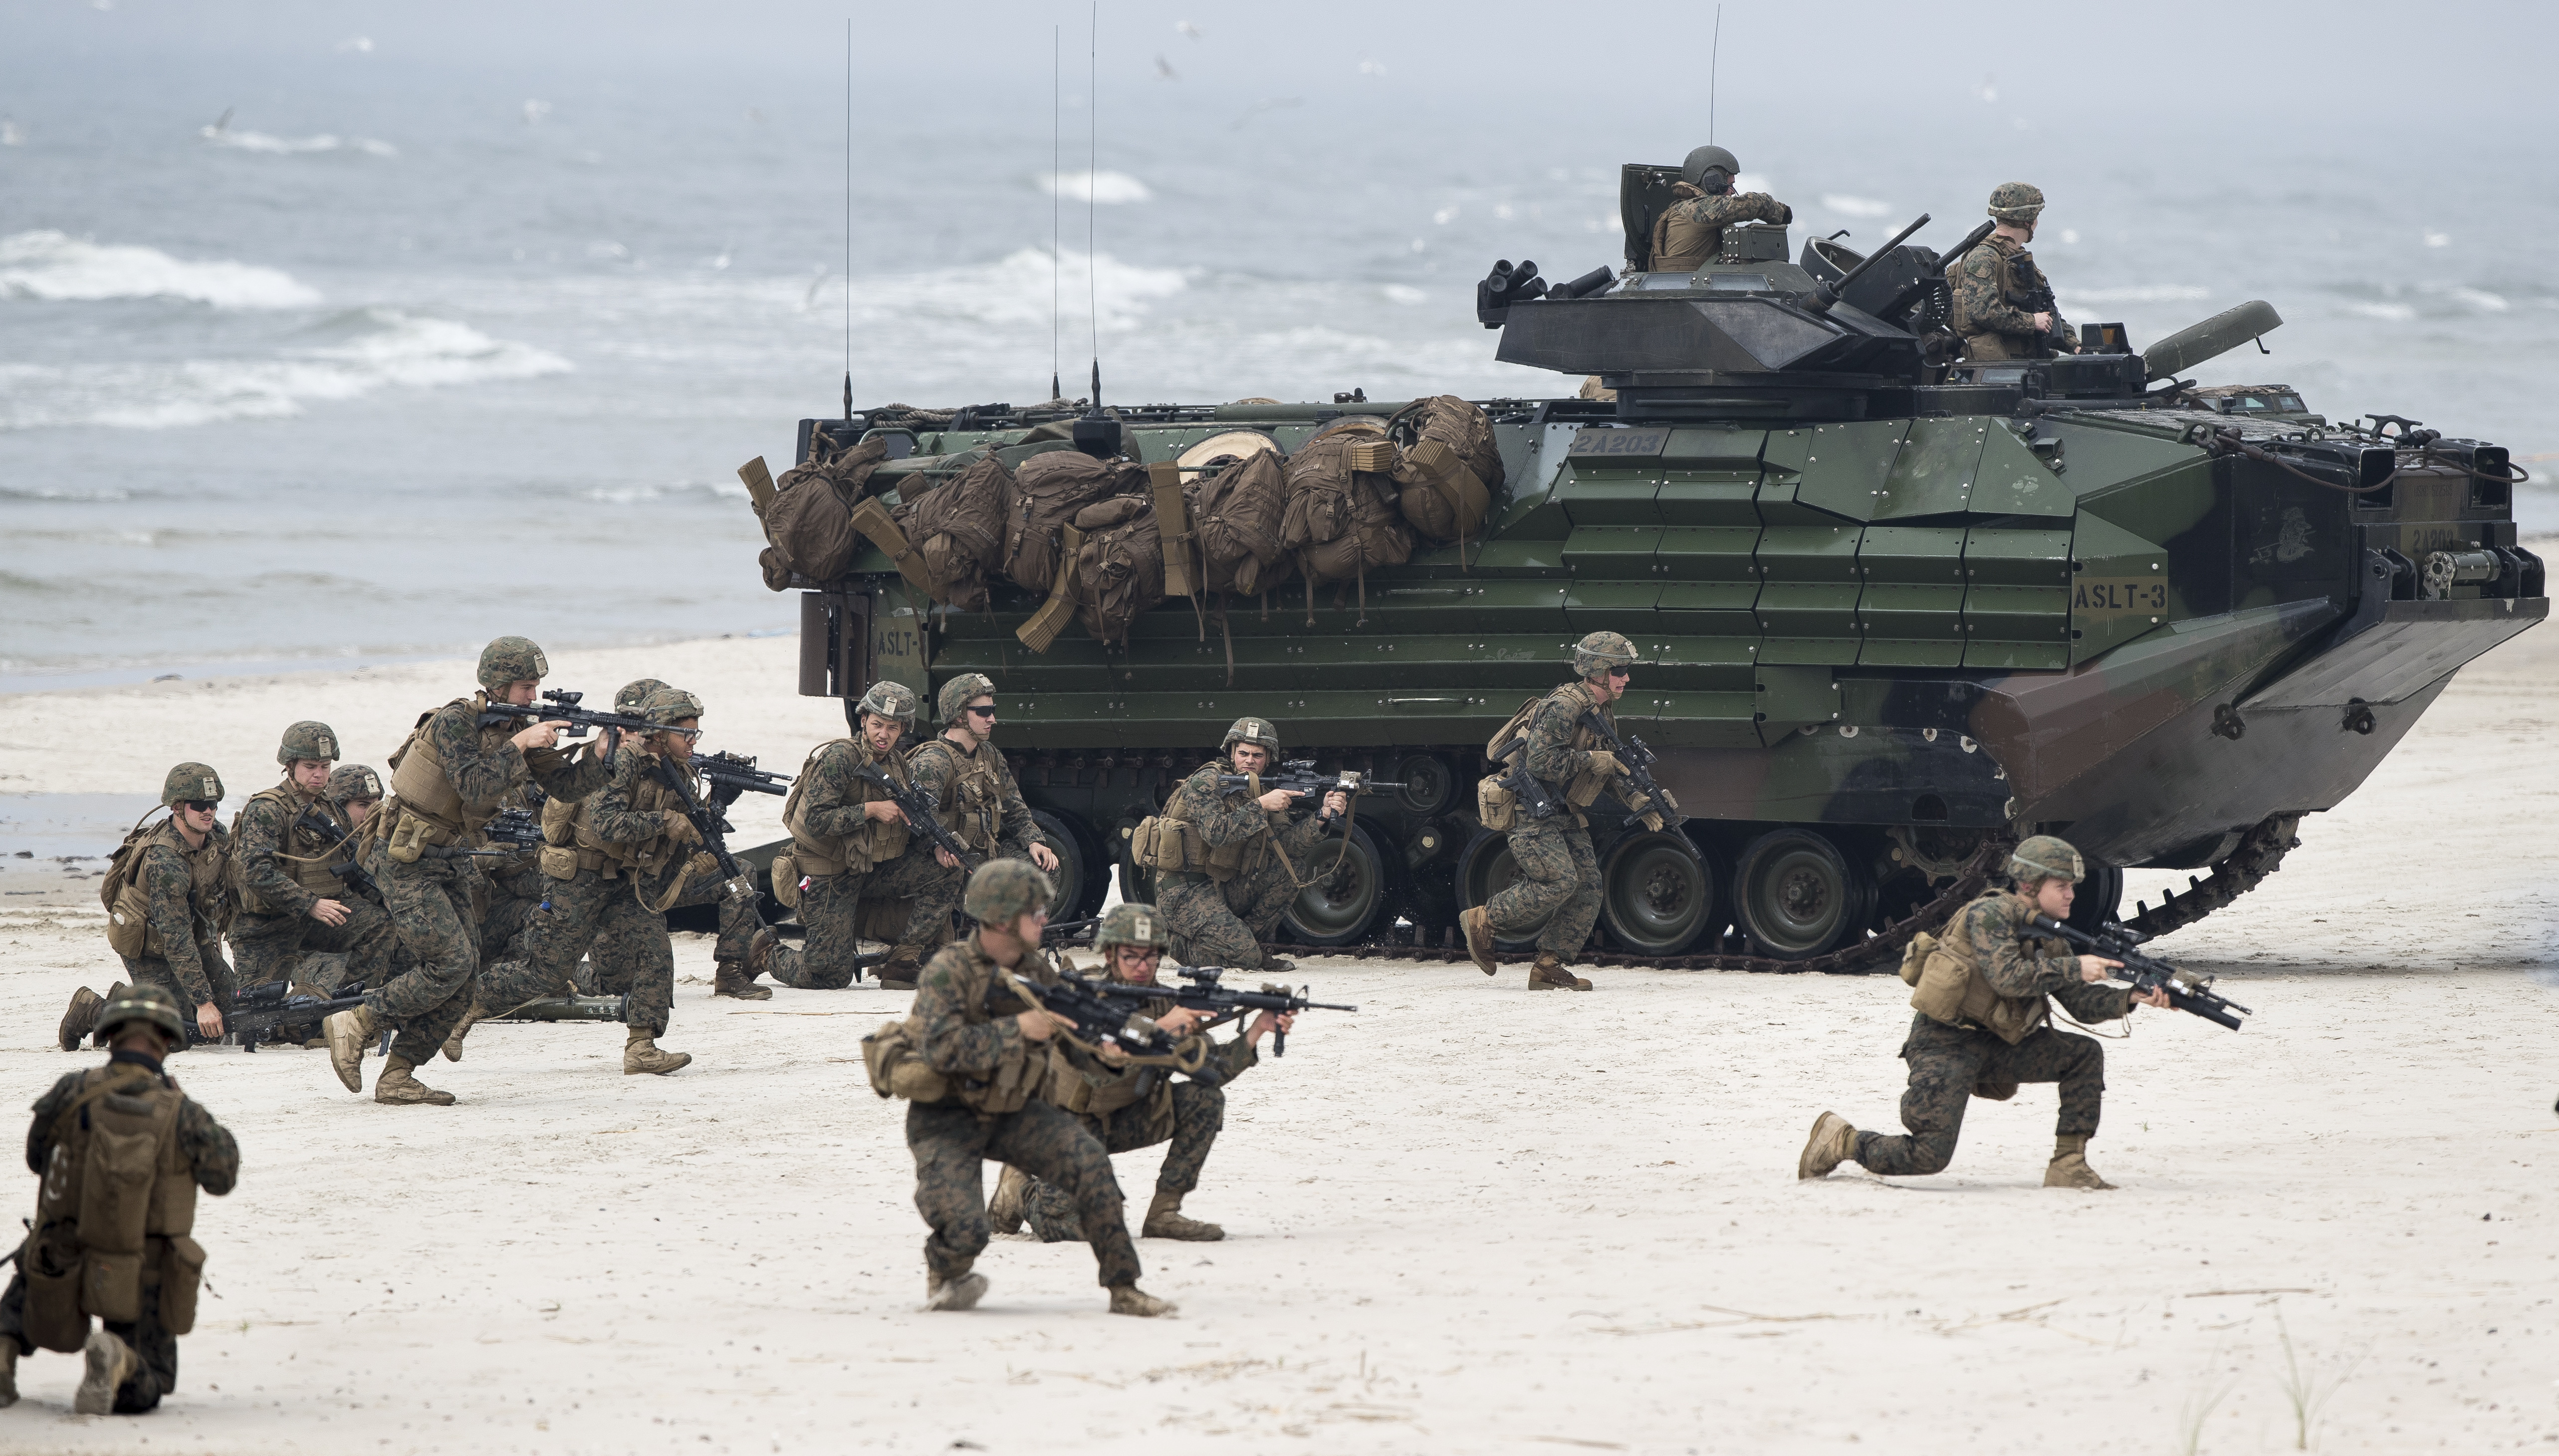 美军陆战队新成立规模较小但机动性更高的滨海作战团（MLR），以协助美国太平洋舰队及空军击退对美及其盟邦的入侵。图为2018年美国陆战队队员与两栖攻击车在欧洲波罗的海克莱佩达区演练登陆行动。美联社